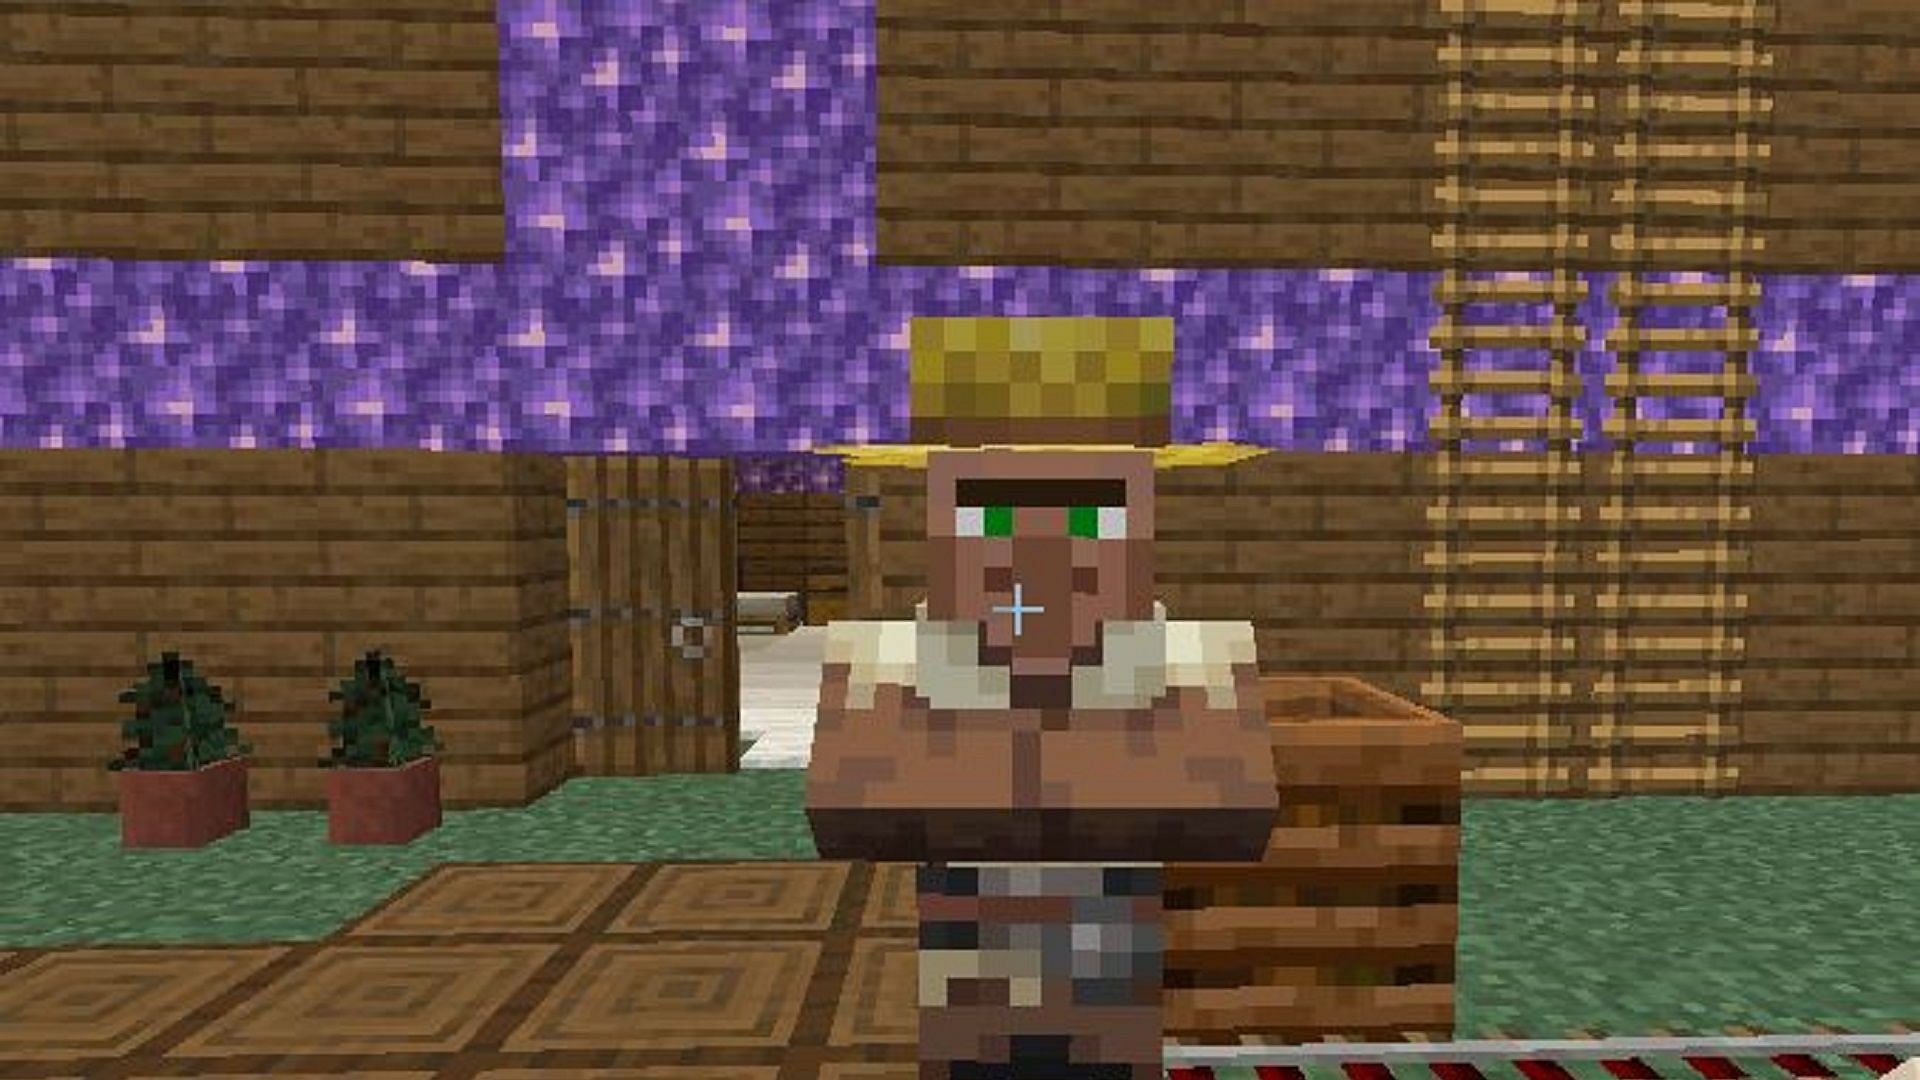 A farmer villager in Minecraft (Image via Mojang)